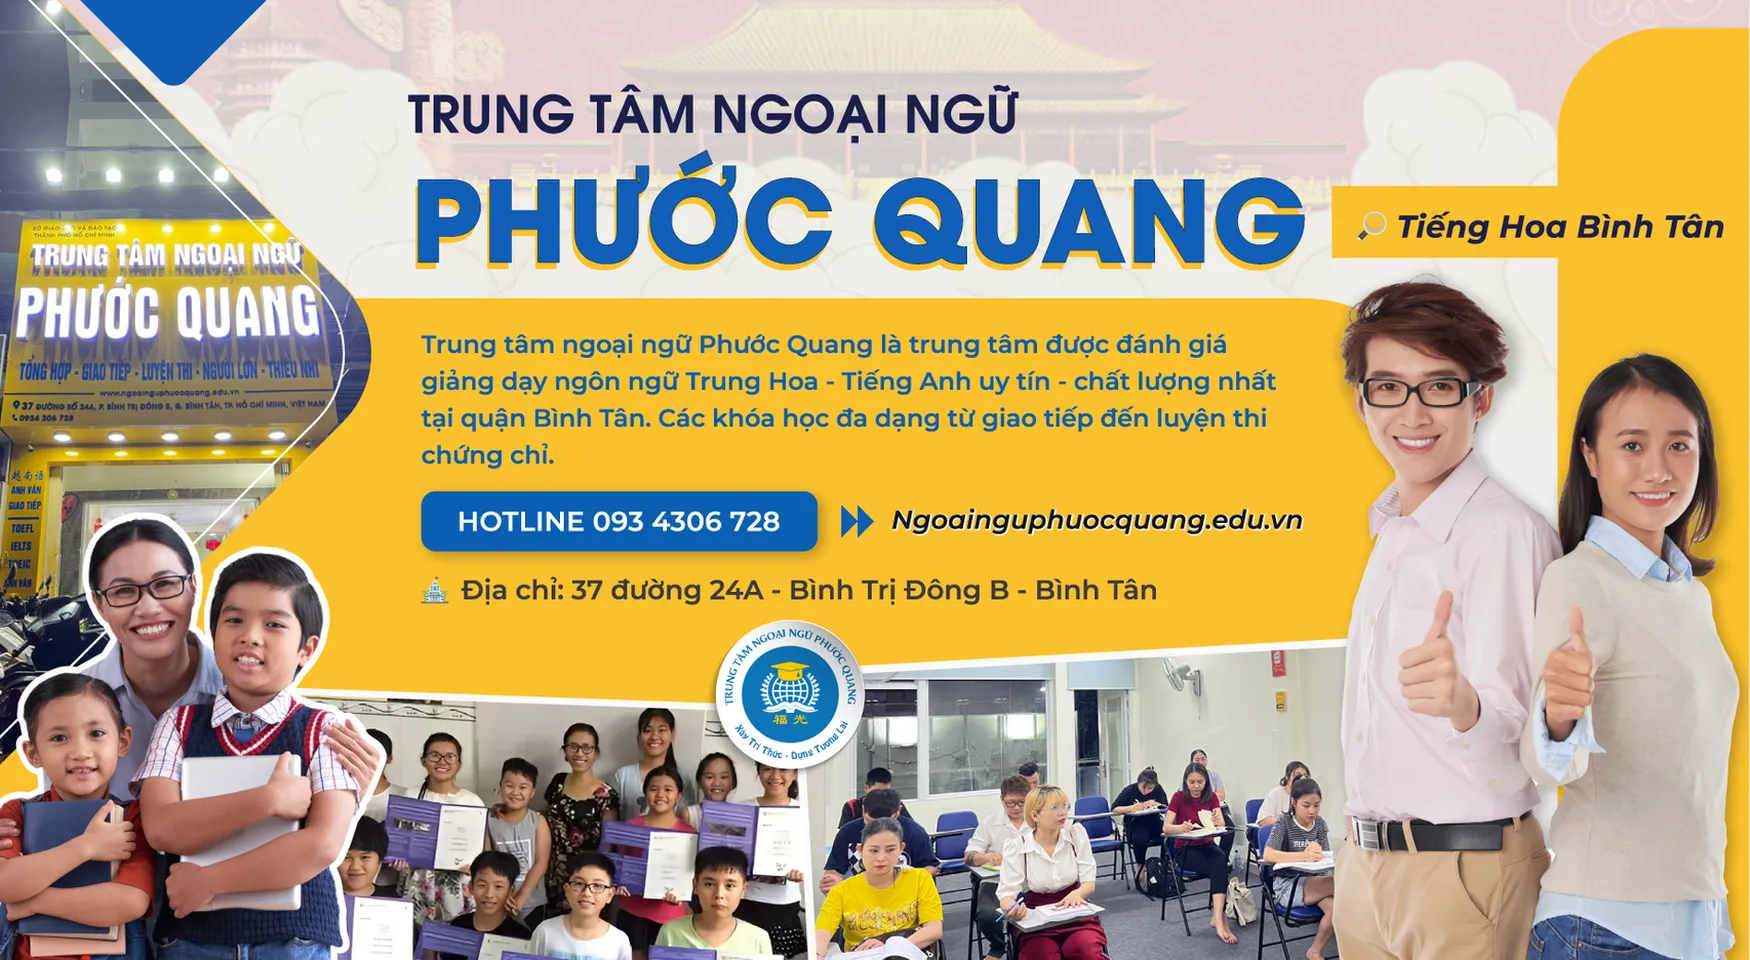 Trung tâm ngoại ngữ Phước Quang